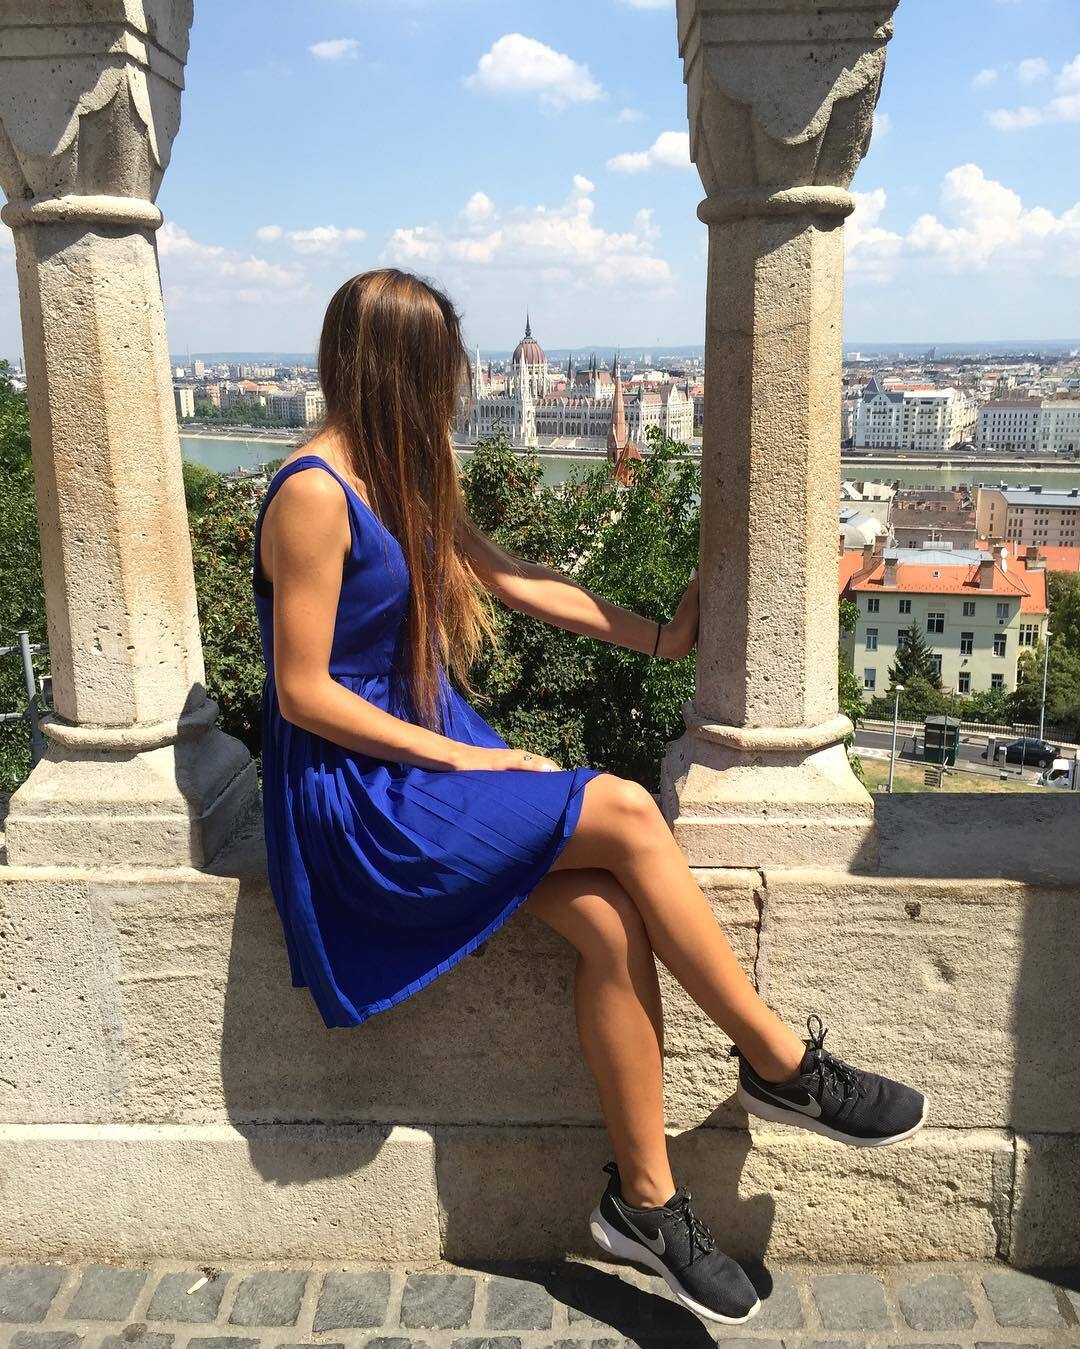 Двадцятирічна дівчина-арбітр із Польщі вразила мережу своєю зовнішністю: фотофакт